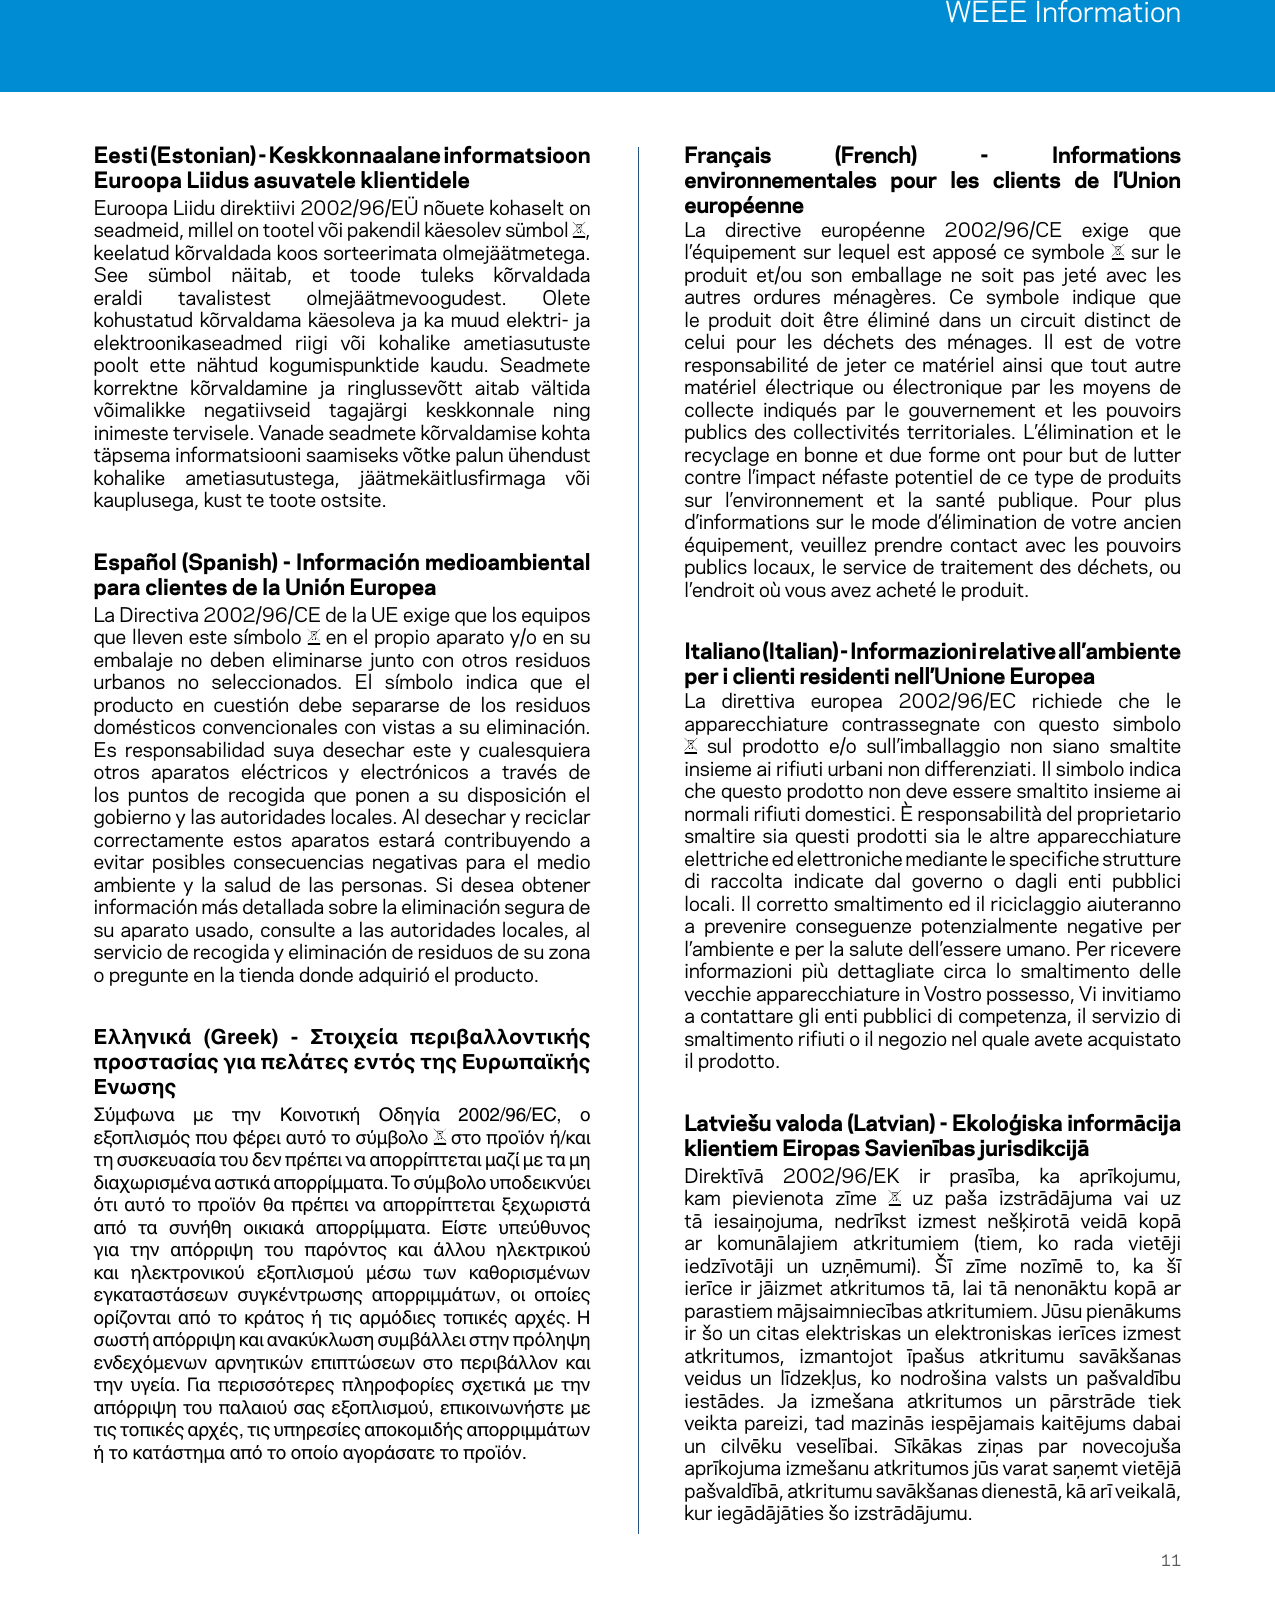 WEEE Information11Eesti (Estonian) - Keskkonnaalane informatsioon Euroopa Liidus asuvatele klientideleEuroopa Liidu direktiivi 2002/96/EÜ nõuete kohaselt on seadmeid, millel on tootel või pakendil käesolev sümbol  , keelatud kõrvaldada koos sorteerimata olmejäätmetega. See sümbol näitab, et toode tuleks kõrvaldada eraldi tavalistest olmejäätmevoogudest. Olete kohustatud kõrvaldama käesoleva ja ka muud elektri- ja elektroonikaseadmed riigi või kohalike ametiasutuste poolt ette nähtud kogumispunktide kaudu. Seadmete korrektne kõrvaldamine ja ringlussevõtt aitab vältida võimalikke negatiivseid tagajärgi keskkonnale ning inimeste tervisele. Vanade seadmete kõrvaldamise kohta täpsema informatsiooni saamiseks võtke palun ühendust kohalike ametiasutustega, jäätmekäitlusfirmaga või kauplusega, kust te toote ostsite.Español (Spanish) - Información medioambiental para clientes de la Unión EuropeaLa Directiva 2002/96/CE de la UE exige que los equipos que lleven este símbolo   en el propio aparato y/o en su embalaje no deben eliminarse junto con otros residuos urbanos no seleccionados. El símbolo indica que el producto en cuestión debe separarse de los residuos domésticos convencionales con vistas a su eliminación. Es responsabilidad suya desechar este y cualesquiera otros aparatos eléctricos y electrónicos a través de los puntos de recogida que ponen a su disposición el gobierno y las autoridades locales. Al desechar y reciclar correctamente estos aparatos estará contribuyendo a evitar posibles consecuencias negativas para el medio ambiente y la salud de las personas. Si desea obtener información más detallada sobre la eliminación segura de su aparato usado, consulte a las autoridades locales, al servicio de recogida y eliminación de residuos de su zona o pregunte en la tienda donde adquirió el producto.    Σύμφωνα  με  την  Κοινοτική  Οδηγία  2002/96/EC,  ο εξοπλισμός που φέρει αυτό το σύμβολο   στο προϊόν ή/και τη συσκευασία του δεν πρέπει να απορρίπτεται μαζί με τα μη διαχωρισμένα αστικά απορρίμματα. Το σύμβολο υποδεικνύει ότι αυτό  το προϊόν  θα  πρέπει  να απορρίπτεται  ξεχωριστά από  τα  συνήθη  οικιακά  απορρίμματα.  Είστε  υπεύθυνος για  την  απόρριψη  του  παρόντος  και  άλλου  ηλεκτρικού και  ηλεκτρονικού  εξοπλισμού  μέσω  των  καθορισμένων εγκαταστάσεων  συγκέντρωσης  απορριμμάτων,  οι  οποίες ορίζονται από  το  κράτος ή  τις αρμόδιες  τοπικές  αρχές.  Η σωστή απόρριψη και ανακύκλωση συμβάλλει στην πρόληψη ενδεχόμενων  αρνητικών  επιπτώσεων  στο  περιβάλλον  και την  υγεία.  Για  περισσότερες  πληροφορίες  σχετικά  με  την απόρριψη του παλαιού σας εξοπλισμού, επικοινωνήστε με τις τοπικές αρχές, τις υπηρεσίες αποκομιδής απορριμμάτων ή το κατάστημα από το οποίο αγοράσατε το προϊόν.Français (French) - Informations environnementales pour les clients de l’Union européenneLa directive européenne 2002/96/CE exige que l’équipement sur lequel est apposé ce symbole   sur le produit et/ou son emballage ne soit pas jeté avec les autres ordures ménagères. Ce symbole indique que le produit doit être éliminé dans un circuit distinct de celui pour les déchets des ménages. Il est de votre responsabilité de jeter ce matériel ainsi que tout autre matériel électrique ou électronique par les moyens de collecte indiqués par le gouvernement et les pouvoirs publics des collectivités territoriales. L’élimination et le recyclage en bonne et due forme ont pour but de lutter contre l’impact néfaste potentiel de ce type de produits sur l’environnement et la santé publique. Pour plus d’informations sur le mode d’élimination de votre ancien équipement, veuillez prendre contact avec les pouvoirs publics locaux, le service de traitement des déchets, ou l’endroit où vous avez acheté le produit.Italiano (Italian) - Informazioni relative all’ambiente per i clienti residenti nell’Unione EuropeaLa direttiva europea 2002/96/EC richiede che le apparecchiature contrassegnate con questo simbolo  sul prodotto e/o sull’imballaggio non siano smaltite insieme ai rifiuti urbani non differenziati. Il simbolo indica che questo prodotto non deve essere smaltito insieme ai normali rifiuti domestici. È responsabilità del proprietario smaltire sia questi prodotti sia le altre apparecchiature elettriche ed elettroniche mediante le specifiche strutture di raccolta indicate dal governo o dagli enti pubblici locali. Il corretto smaltimento ed il riciclaggio aiuteranno a prevenire conseguenze potenzialmente negative per l’ambiente e per la salute dell’essere umano. Per ricevere informazioni più dettagliate circa lo smaltimento delle vecchie apparecchiature in Vostro possesso, Vi invitiamo a contattare gli enti pubblici di competenza, il servizio di smaltimento rifiuti o il negozio nel quale avete acquistato il prodotto.Latviešu valoda (Latvian) - Ekoloģiska informācija klientiem Eiropas Savienības jurisdikcijāDirektīvā 2002/96/EK ir prasība, ka aprīkojumu, kam pievienota zīme   uz paša izstrādājuma vai uz tā iesaiņojuma, nedrīkst izmest nešķirotā veidā kopā ar komunālajiem atkritumiem (tiem, ko rada vietēji iedzīvotāji un uzņēmumi). Šī zīme nozīmē to, ka šī ierīce ir jāizmet atkritumos tā, lai tā nenonāktu kopā ar parastiem mājsaimniecības atkritumiem. Jūsu pienākums ir šo un citas elektriskas un elektroniskas ierīces izmest atkritumos, izmantojot īpašus atkritumu savākšanas veidus un līdzekļus, ko nodrošina valsts un pašvaldību iestādes. Ja izmešana atkritumos un pārstrāde tiek veikta pareizi, tad mazinās iespējamais kaitējums dabai un cilvēku veselībai. Sīkākas ziņas par novecojuša aprīkojuma izmešanu atkritumos jūs varat saņemt vietējā pašvaldībā, atkritumu savākšanas dienestā, kā arī veikalā, kur iegādājāties šo izstrādājumu.